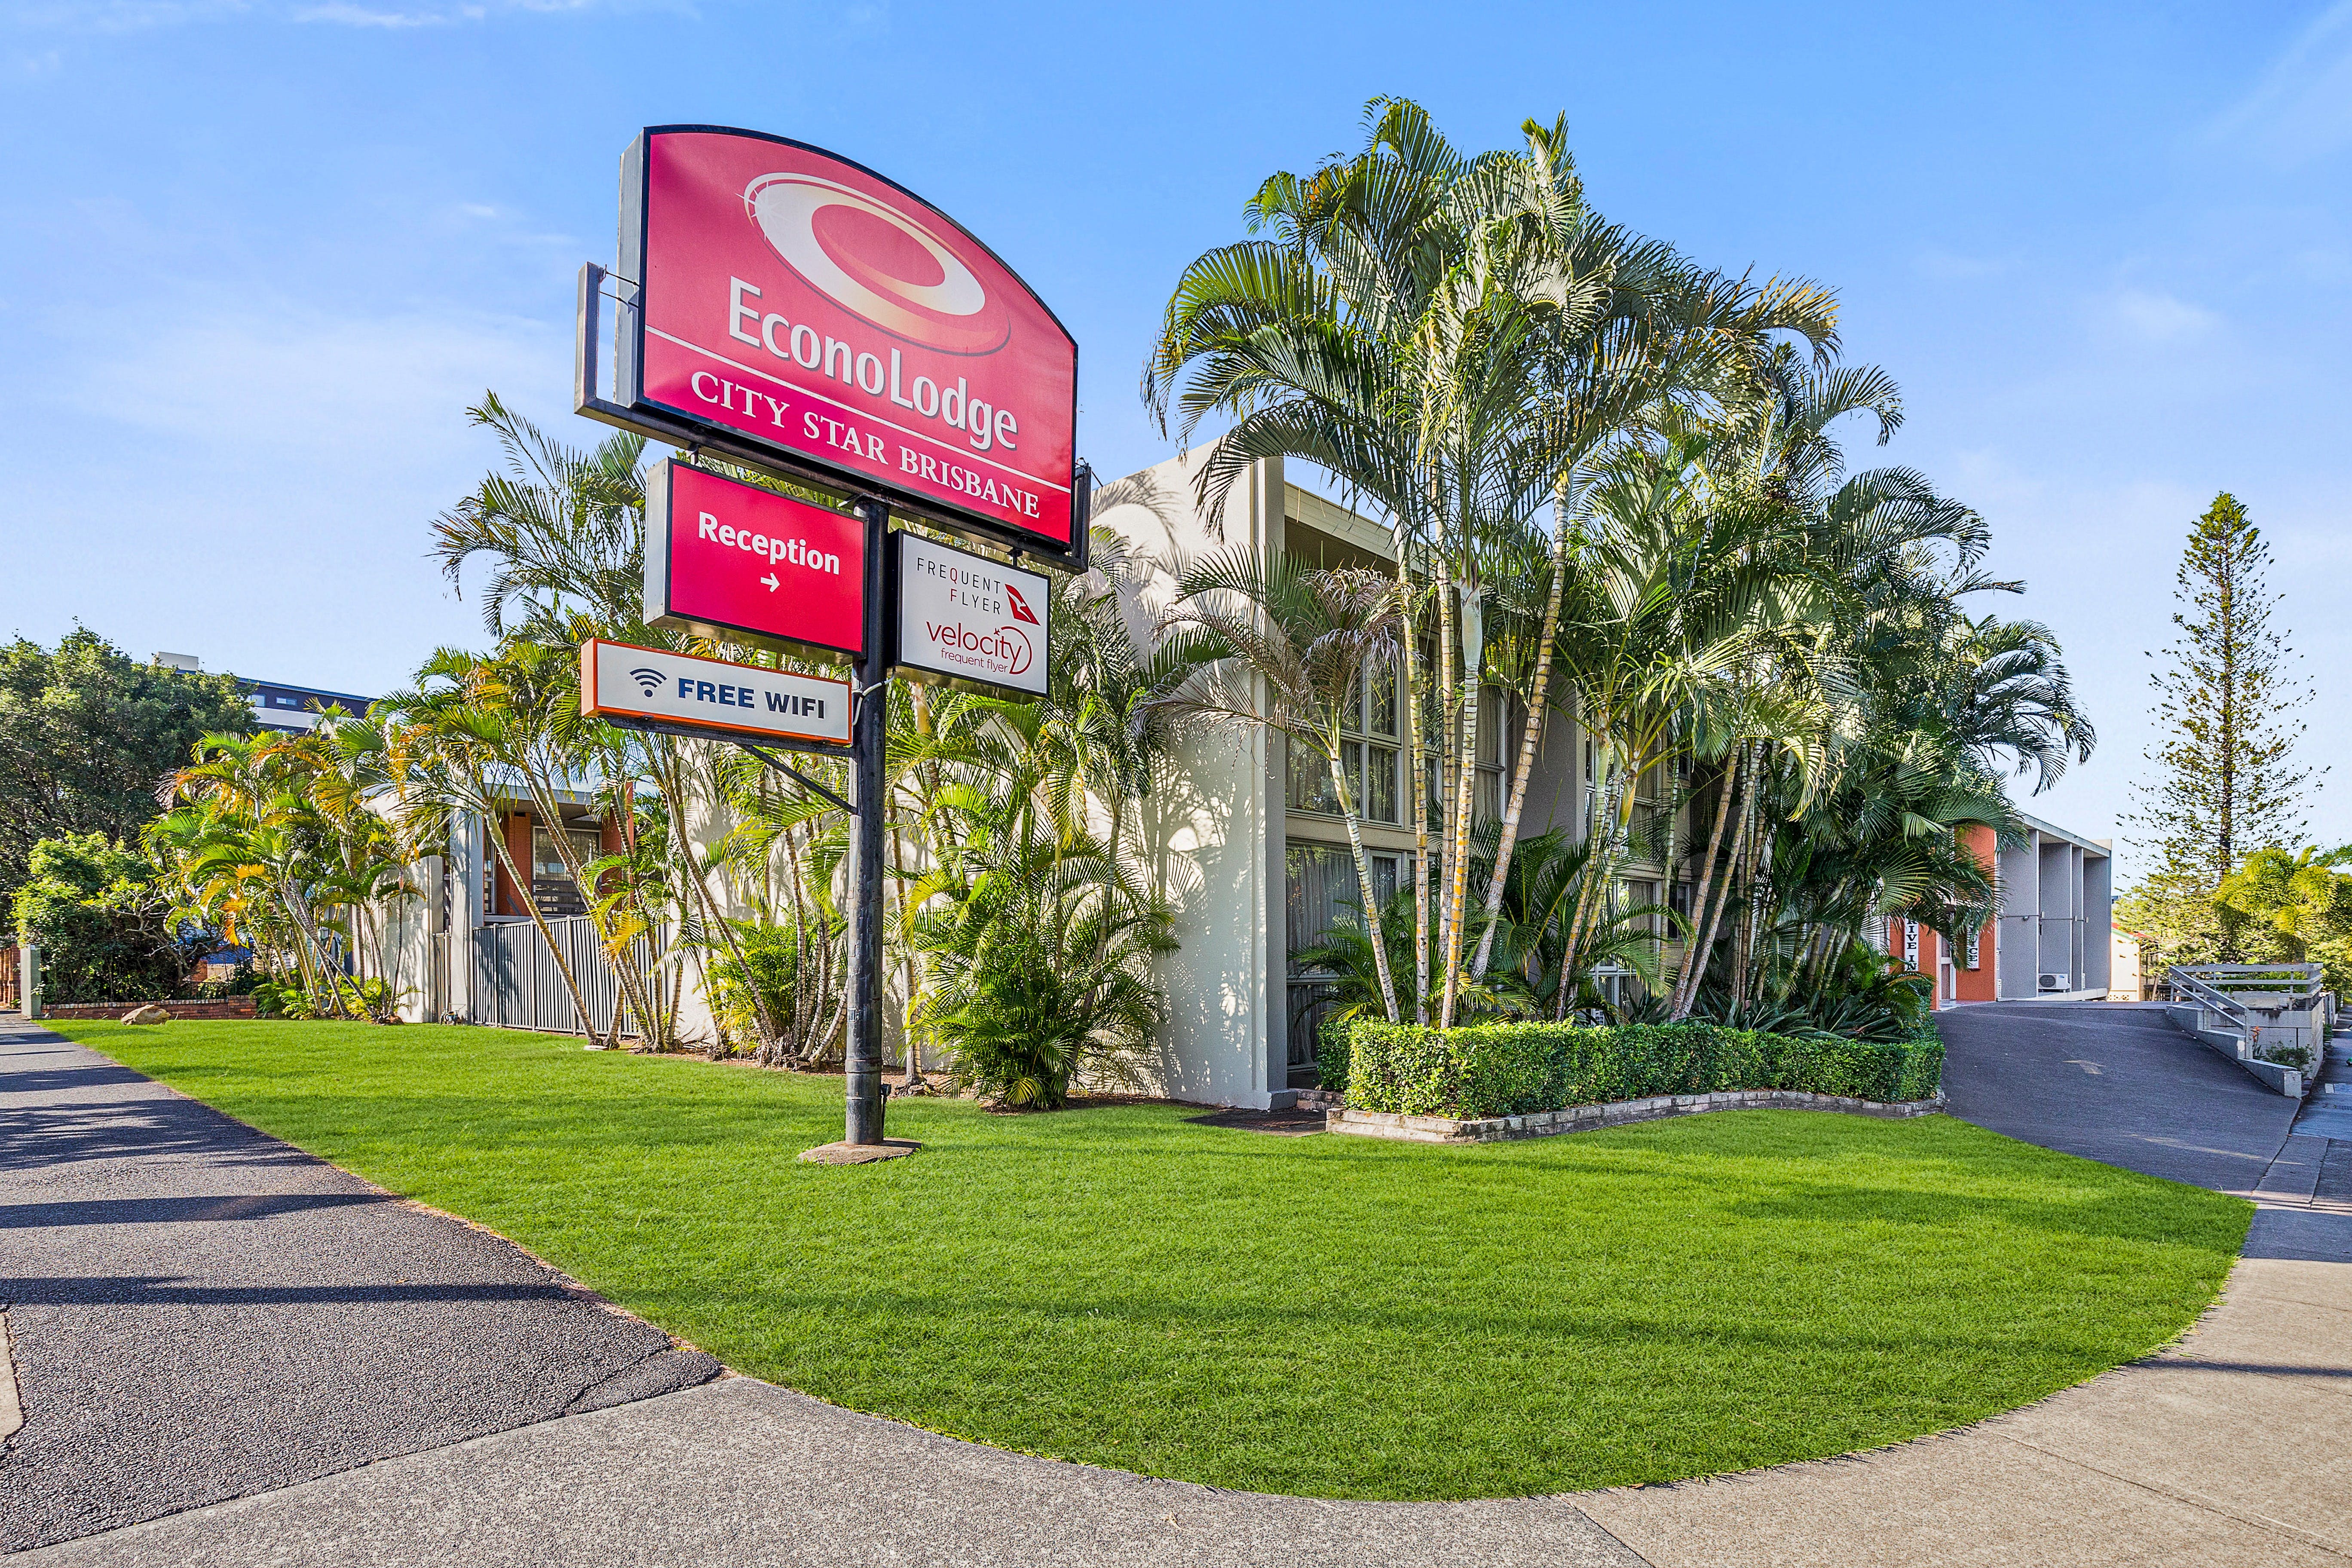 Econo Lodge City Star Brisbane - Accommodation in Bendigo